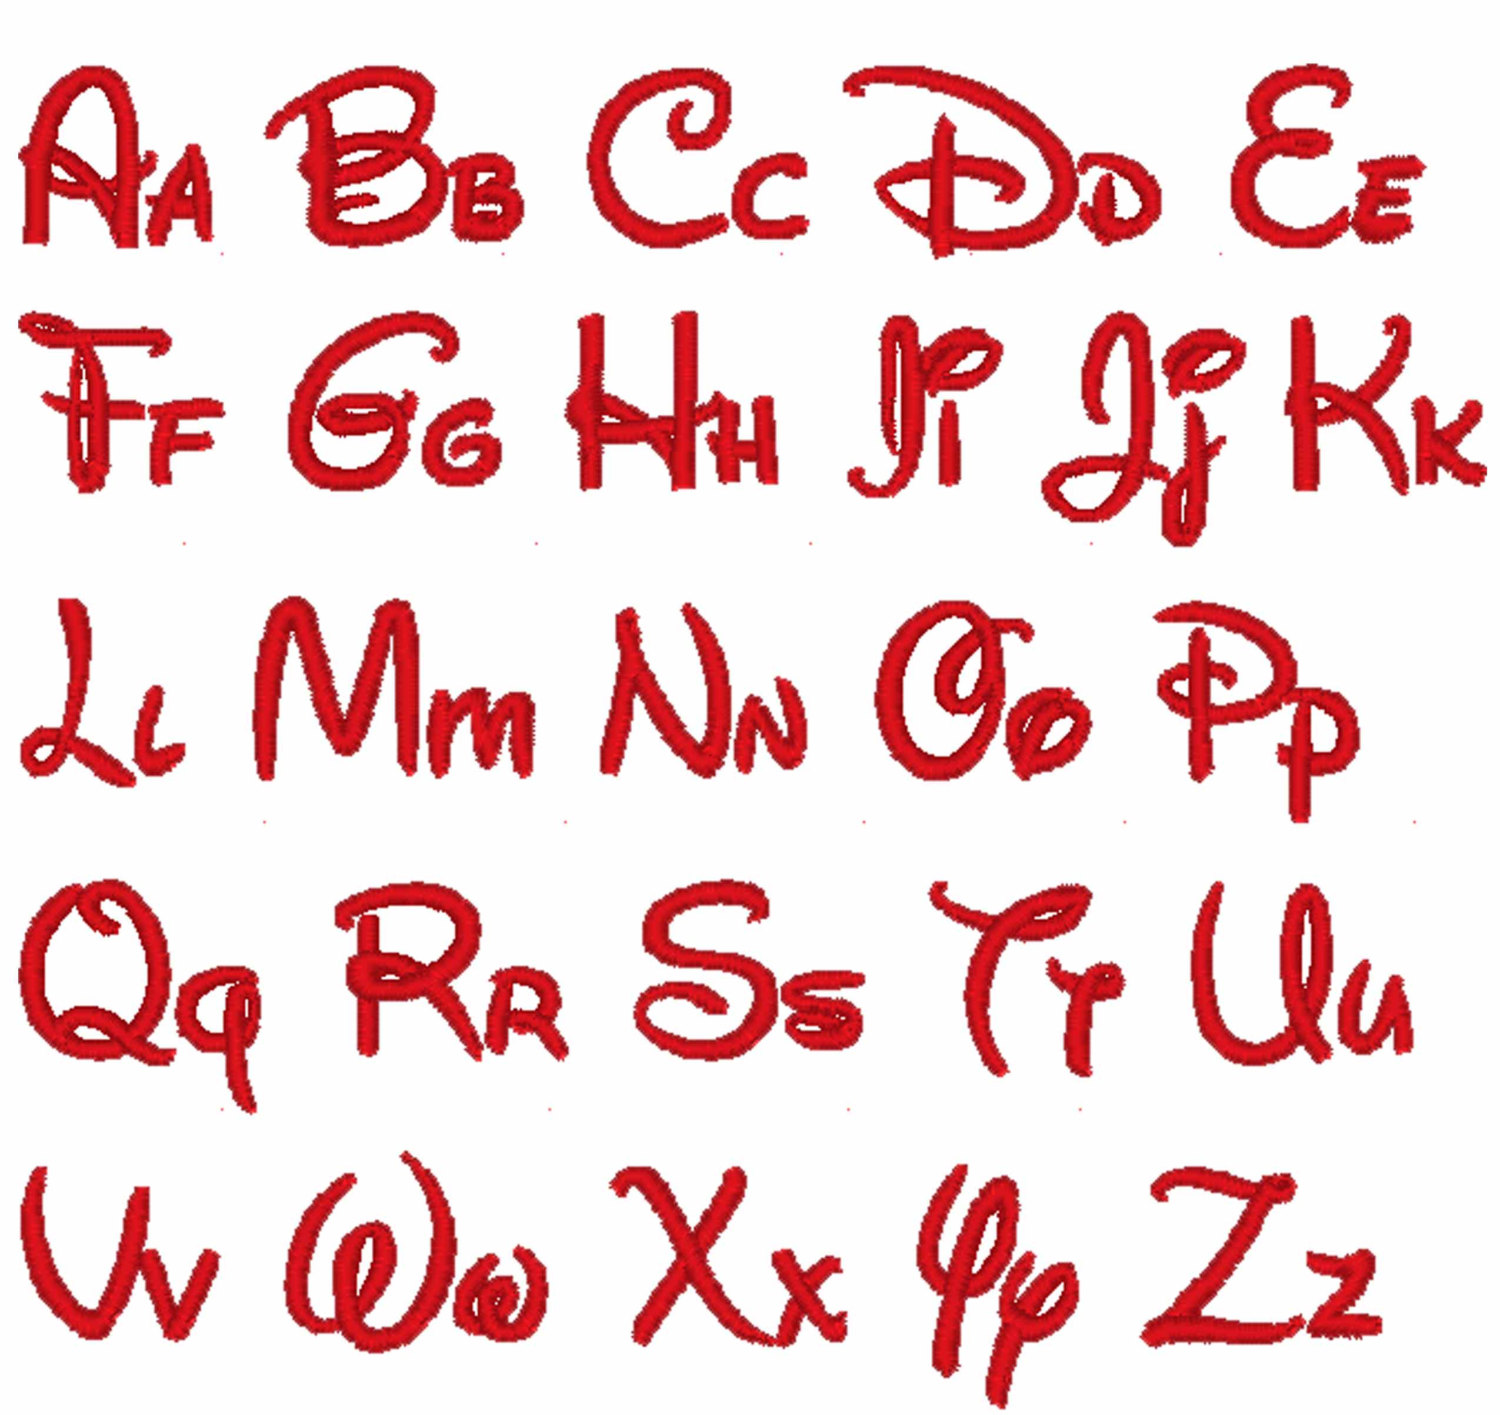 14-disney-font-alphabet-letters-images-disney-letter-font-embroidery-disney-font-alphabet